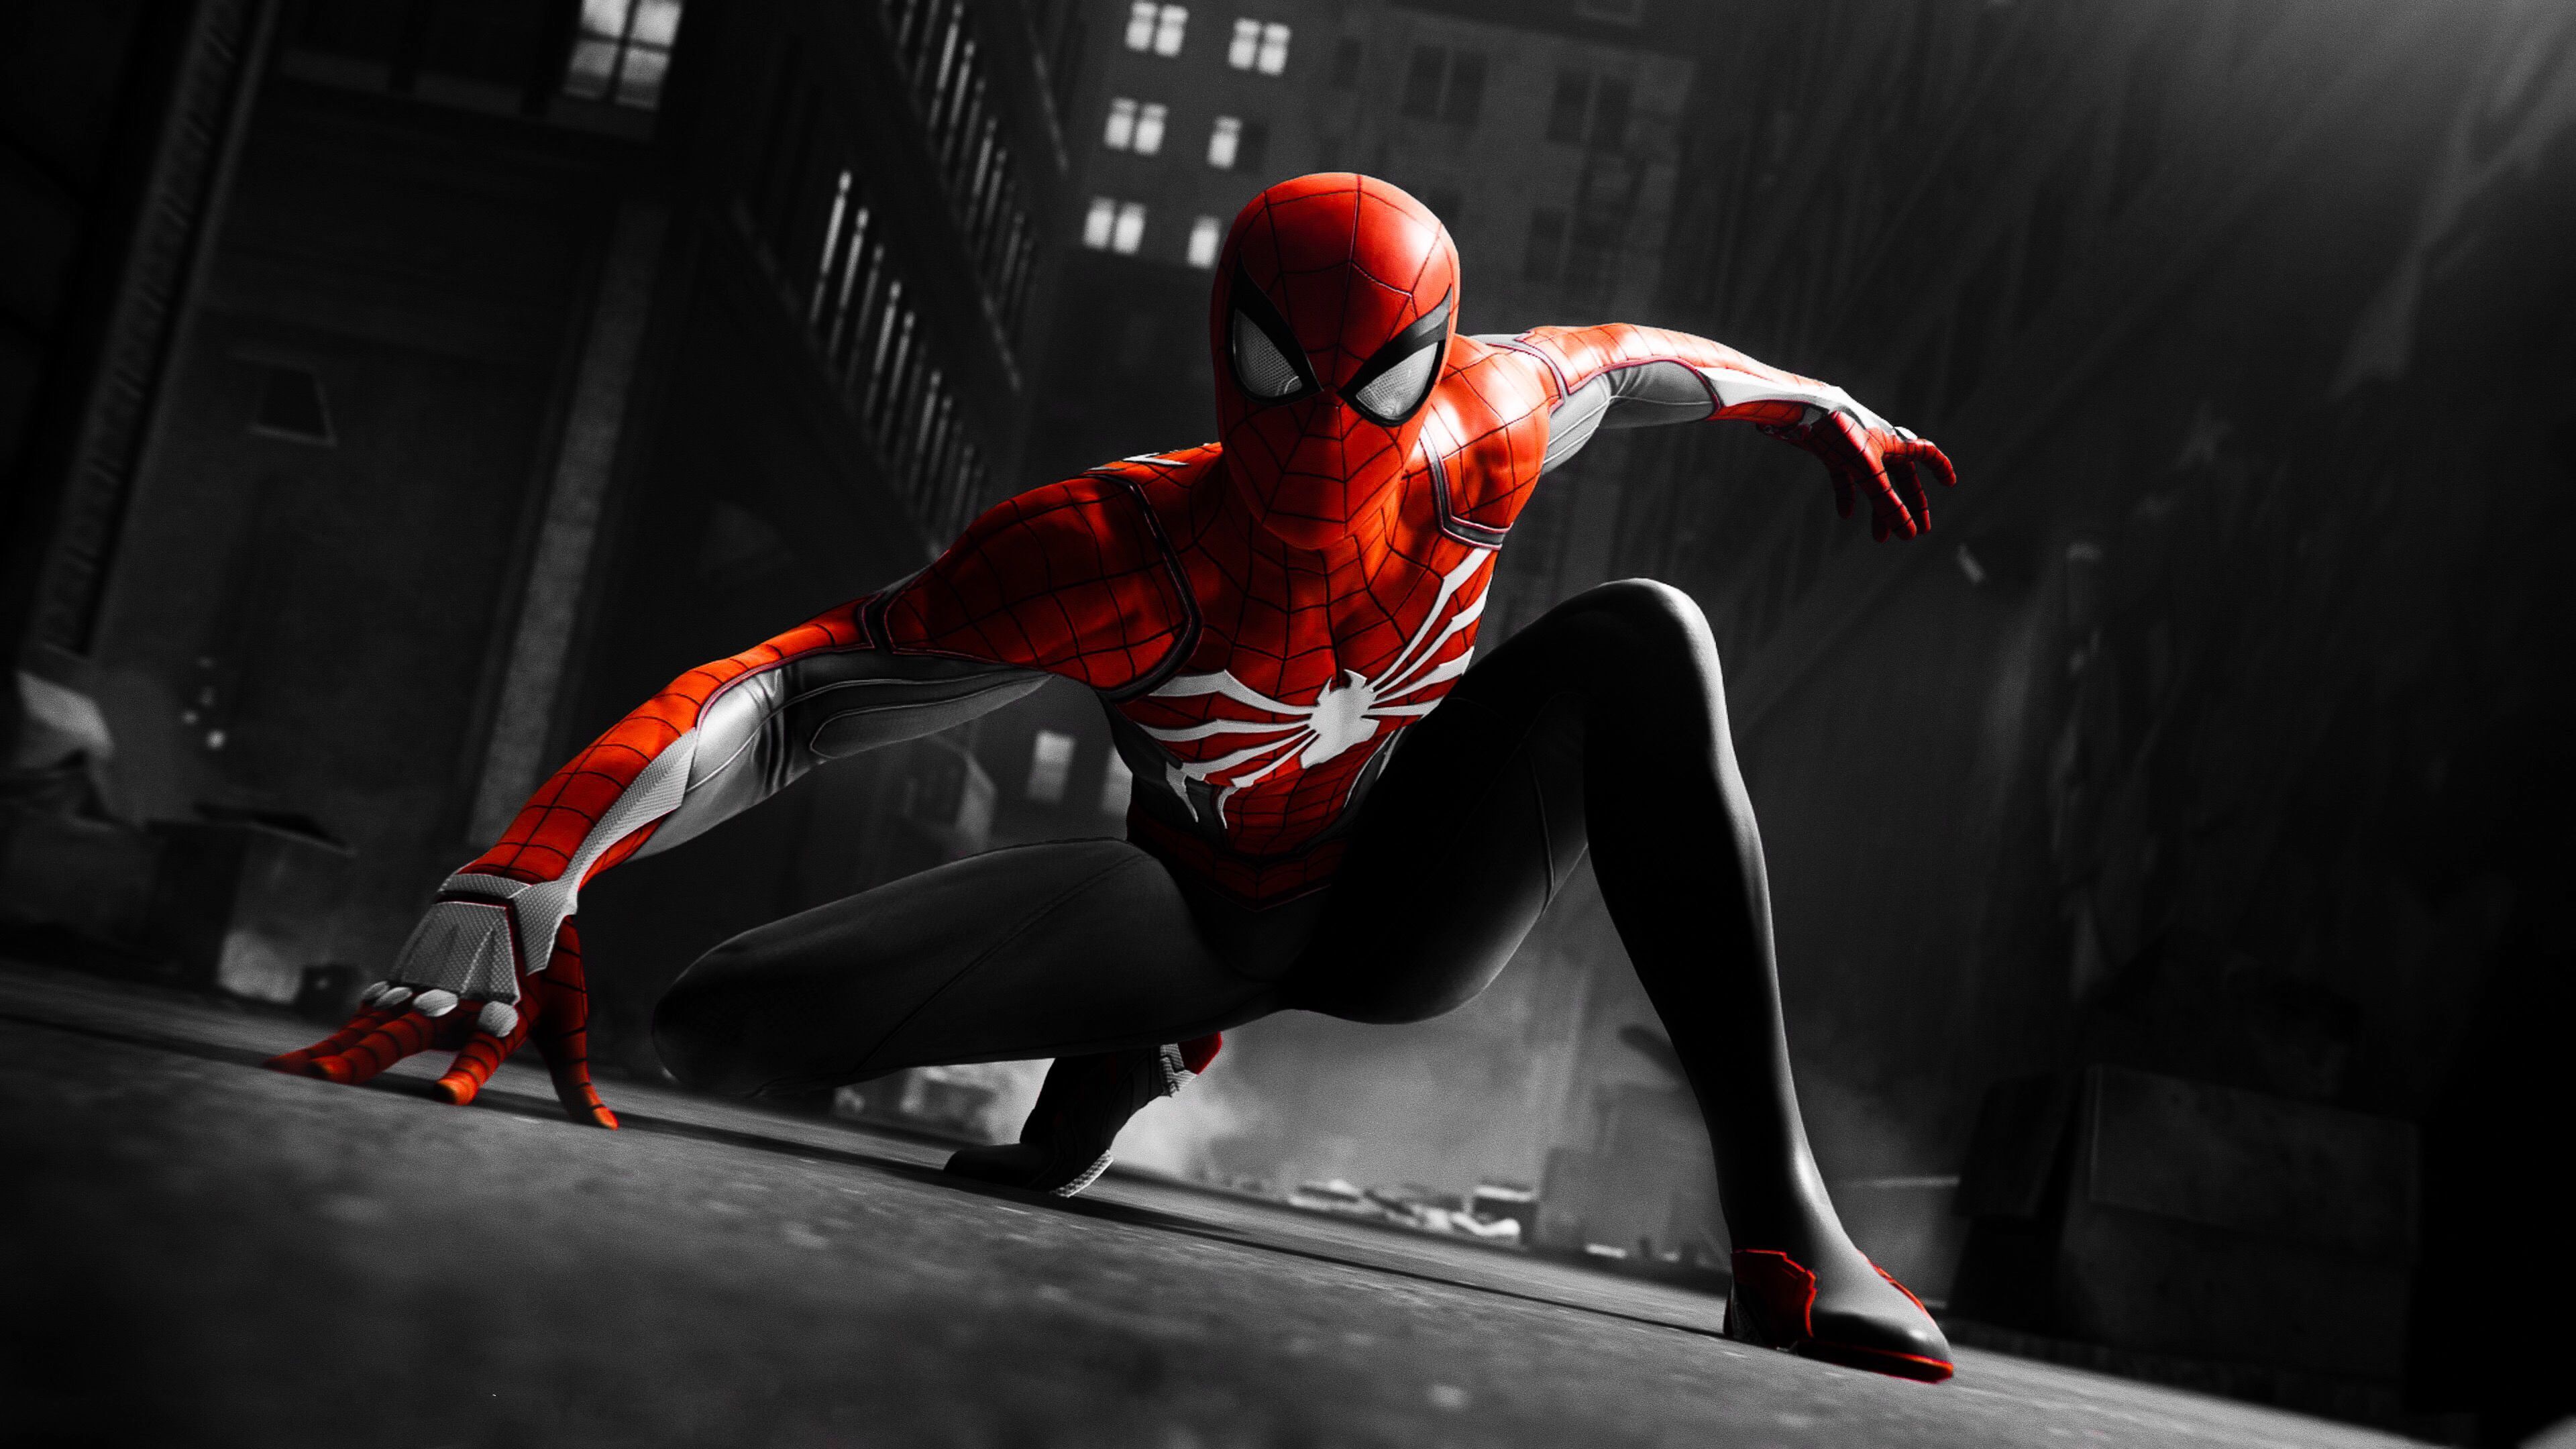 Black and Red Spider-Man Wallpapers Hãy đến với thế giới của Spiderman với hình nền đẹp mắt được thiết kế với màu sắc đen đỏ. Hình nền với chất lượng hình ảnh tuyệt vời sẽ mang lại cho bạn cảm giác thú vị như đang tham gia vào cuộc phiêu lưu của Spiderman. Hãy xem ngay hình nền này để trải nghiệm không gian sống động đến tuyệt vời!